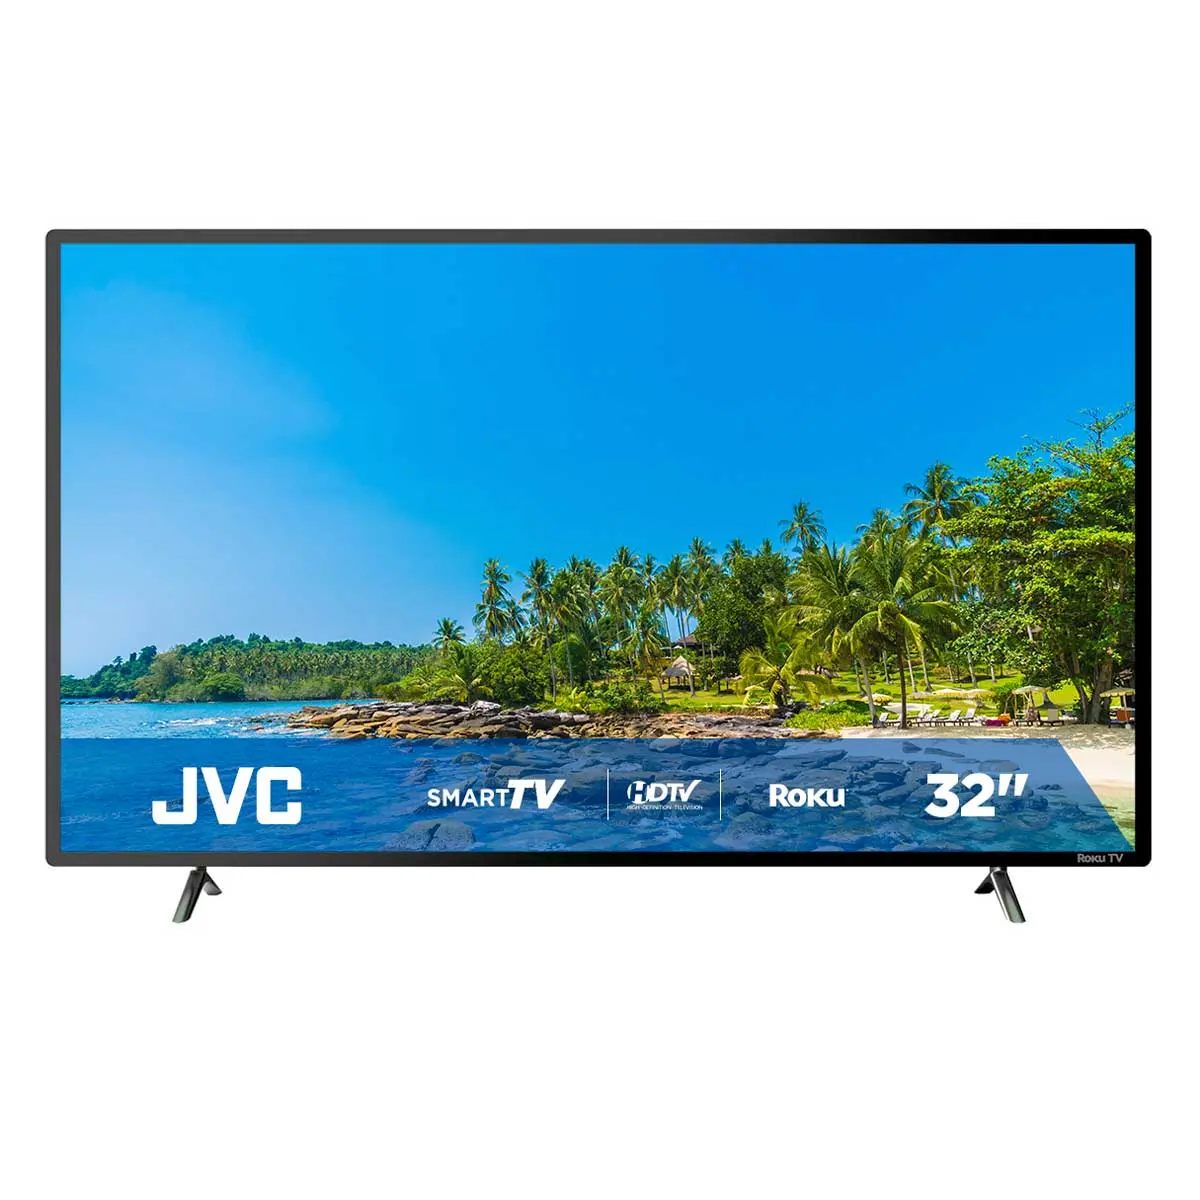 pantalla jvc - Qué tan buena es una pantalla JVC